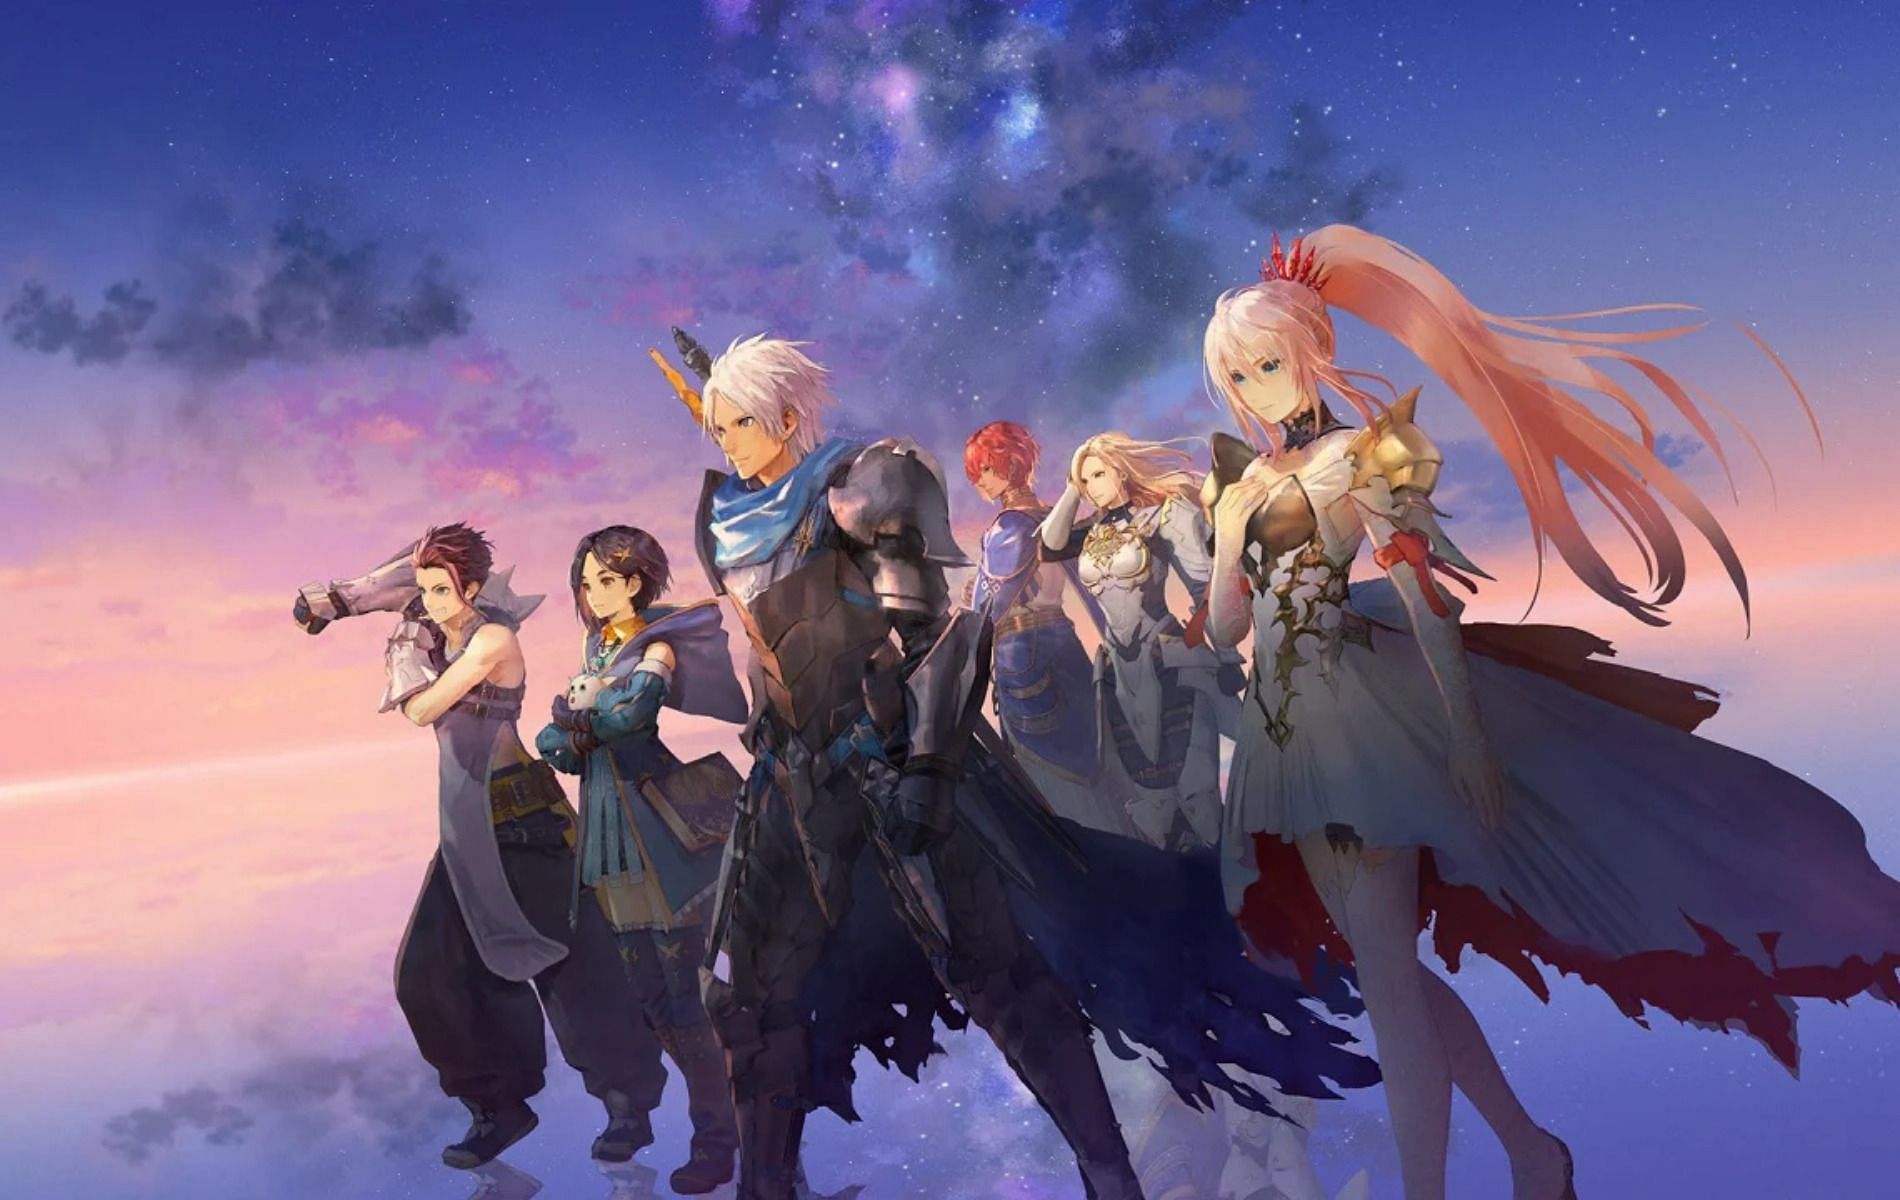 Studio đứng sau thành công của Kimetsu no Yaiba tuyên bố sẽ biến tựa game  đình đám Tales Of Arise thành siêu phẩm anime năm 2022